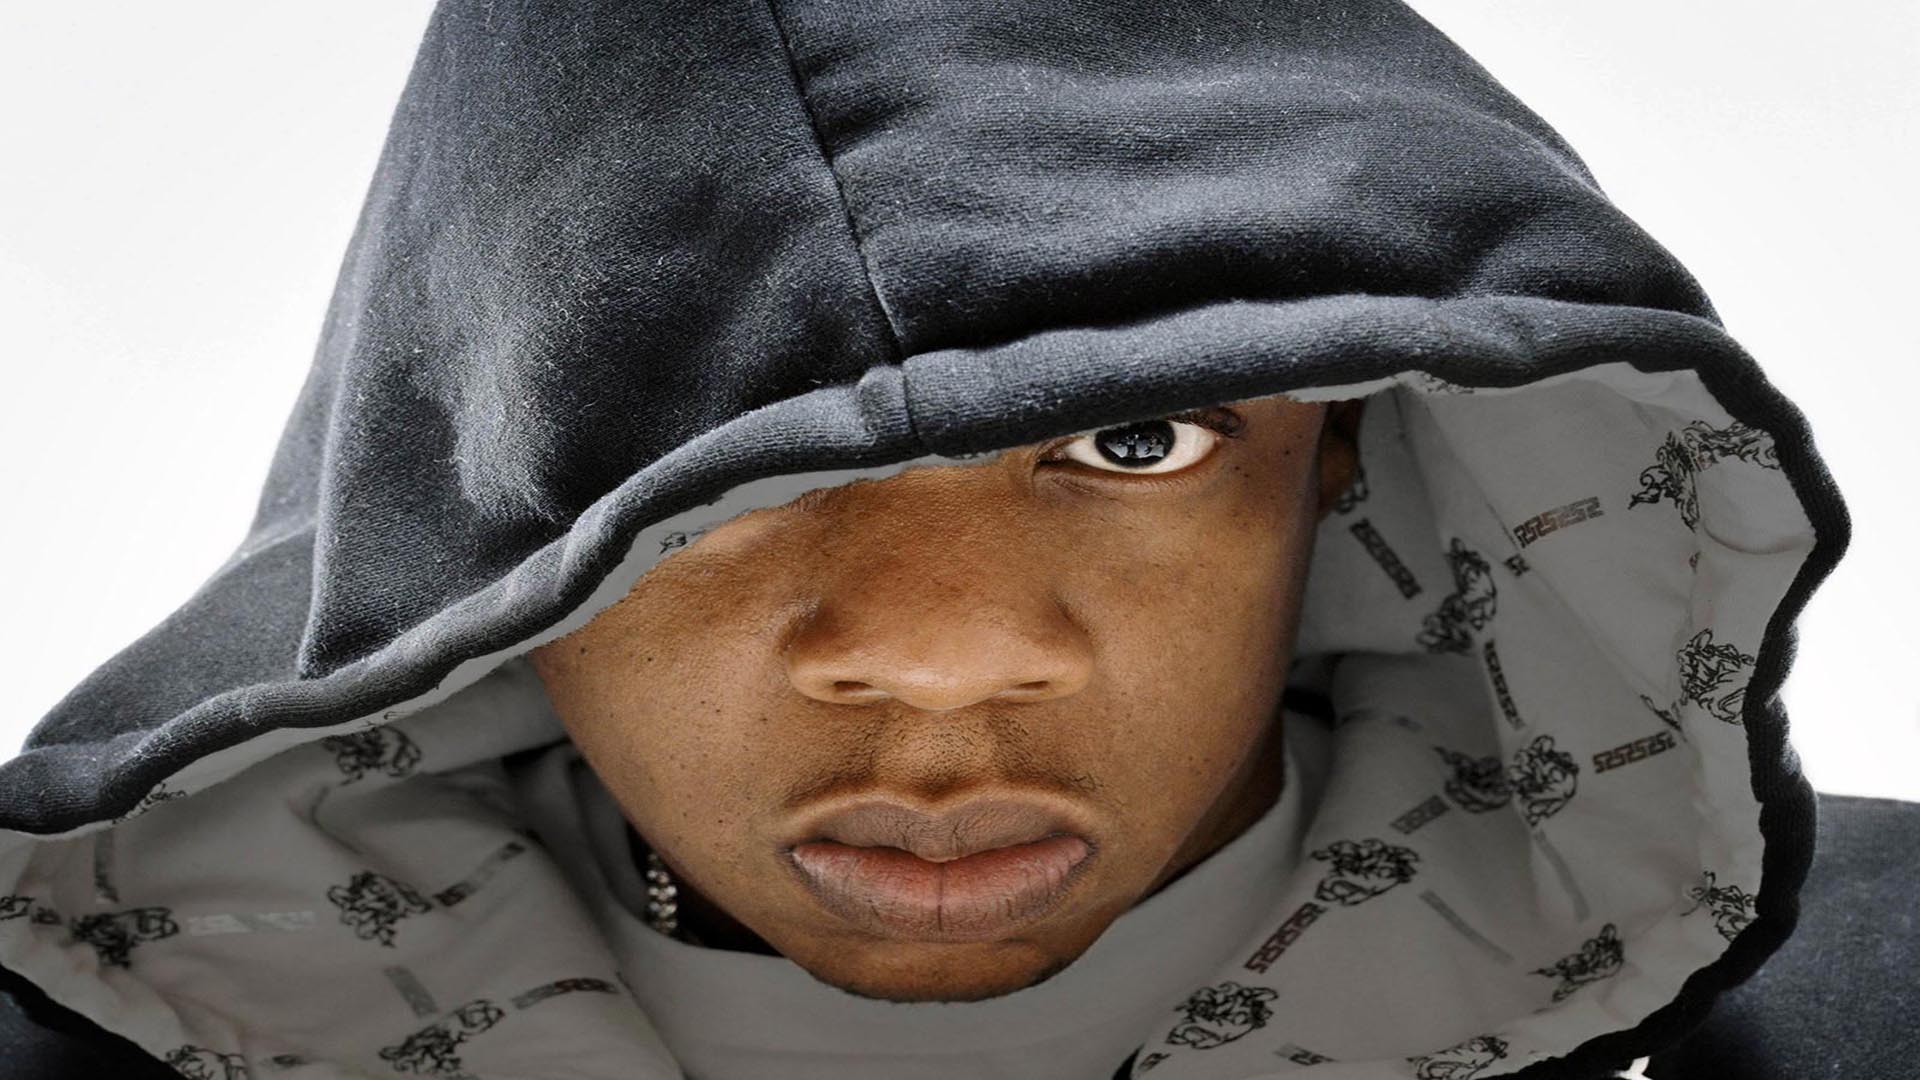 Download American 90s Rapper Jay-Z Wallpaper